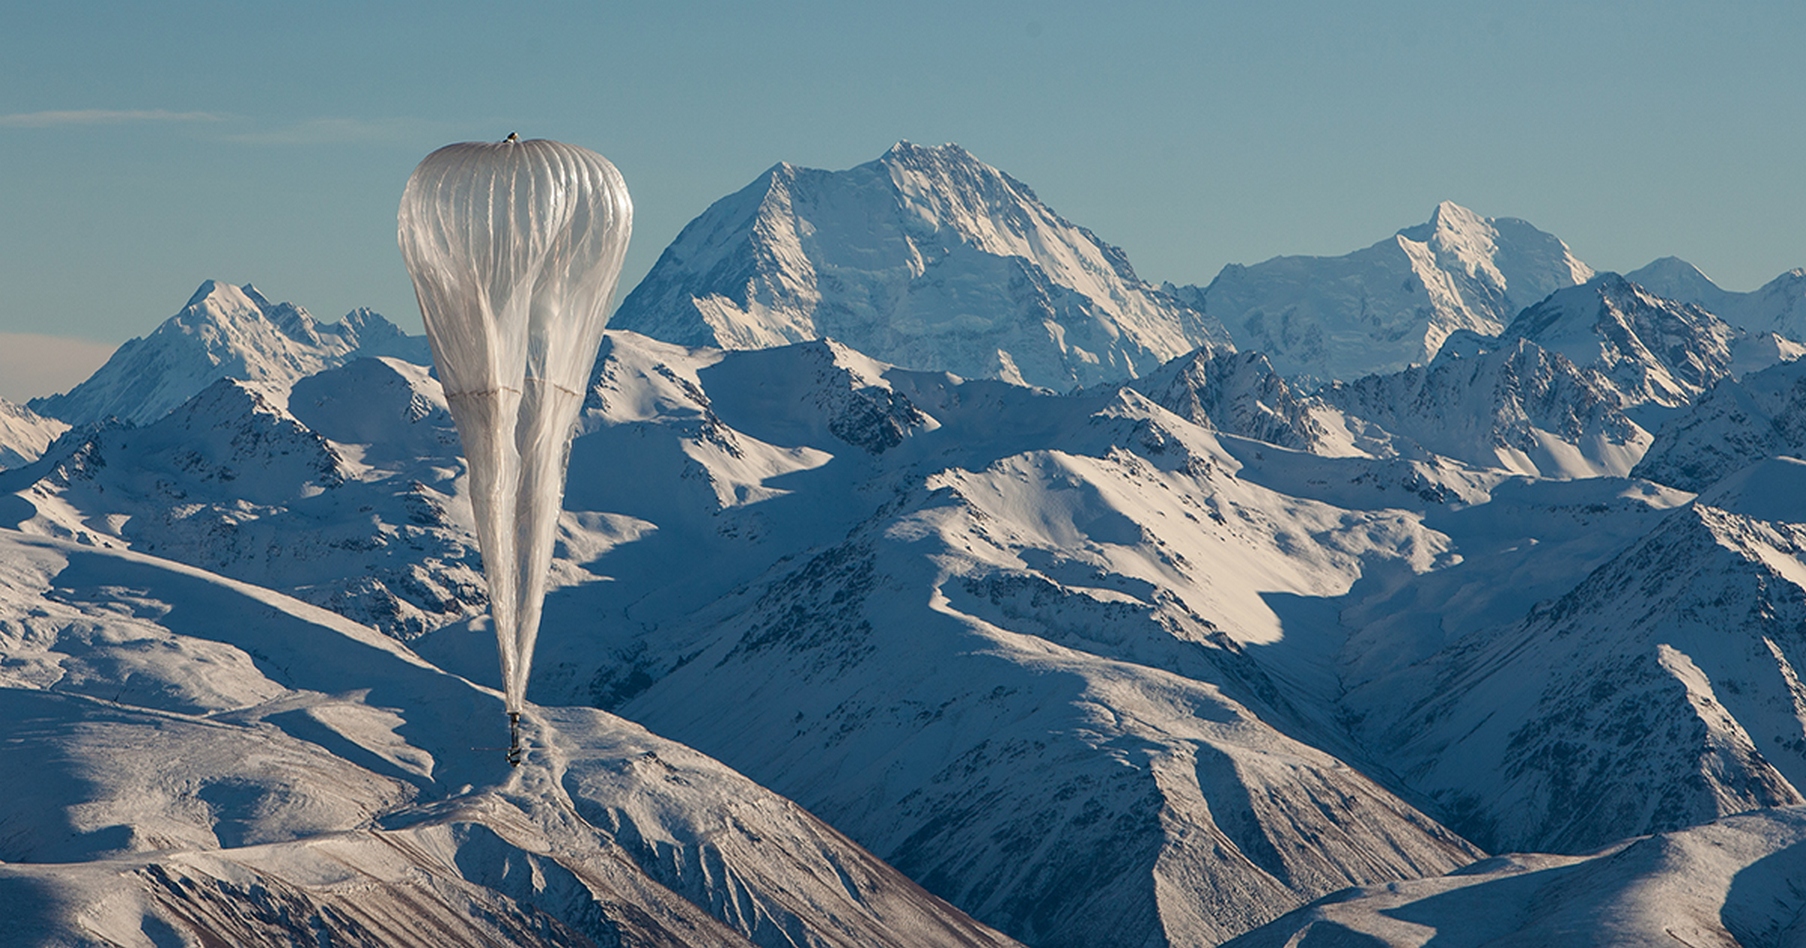 Les ballons stratosphériques Loon de Google sont fabriqués avec des feuilles de polyéthylène et gonflés à l’hélium. © X.company